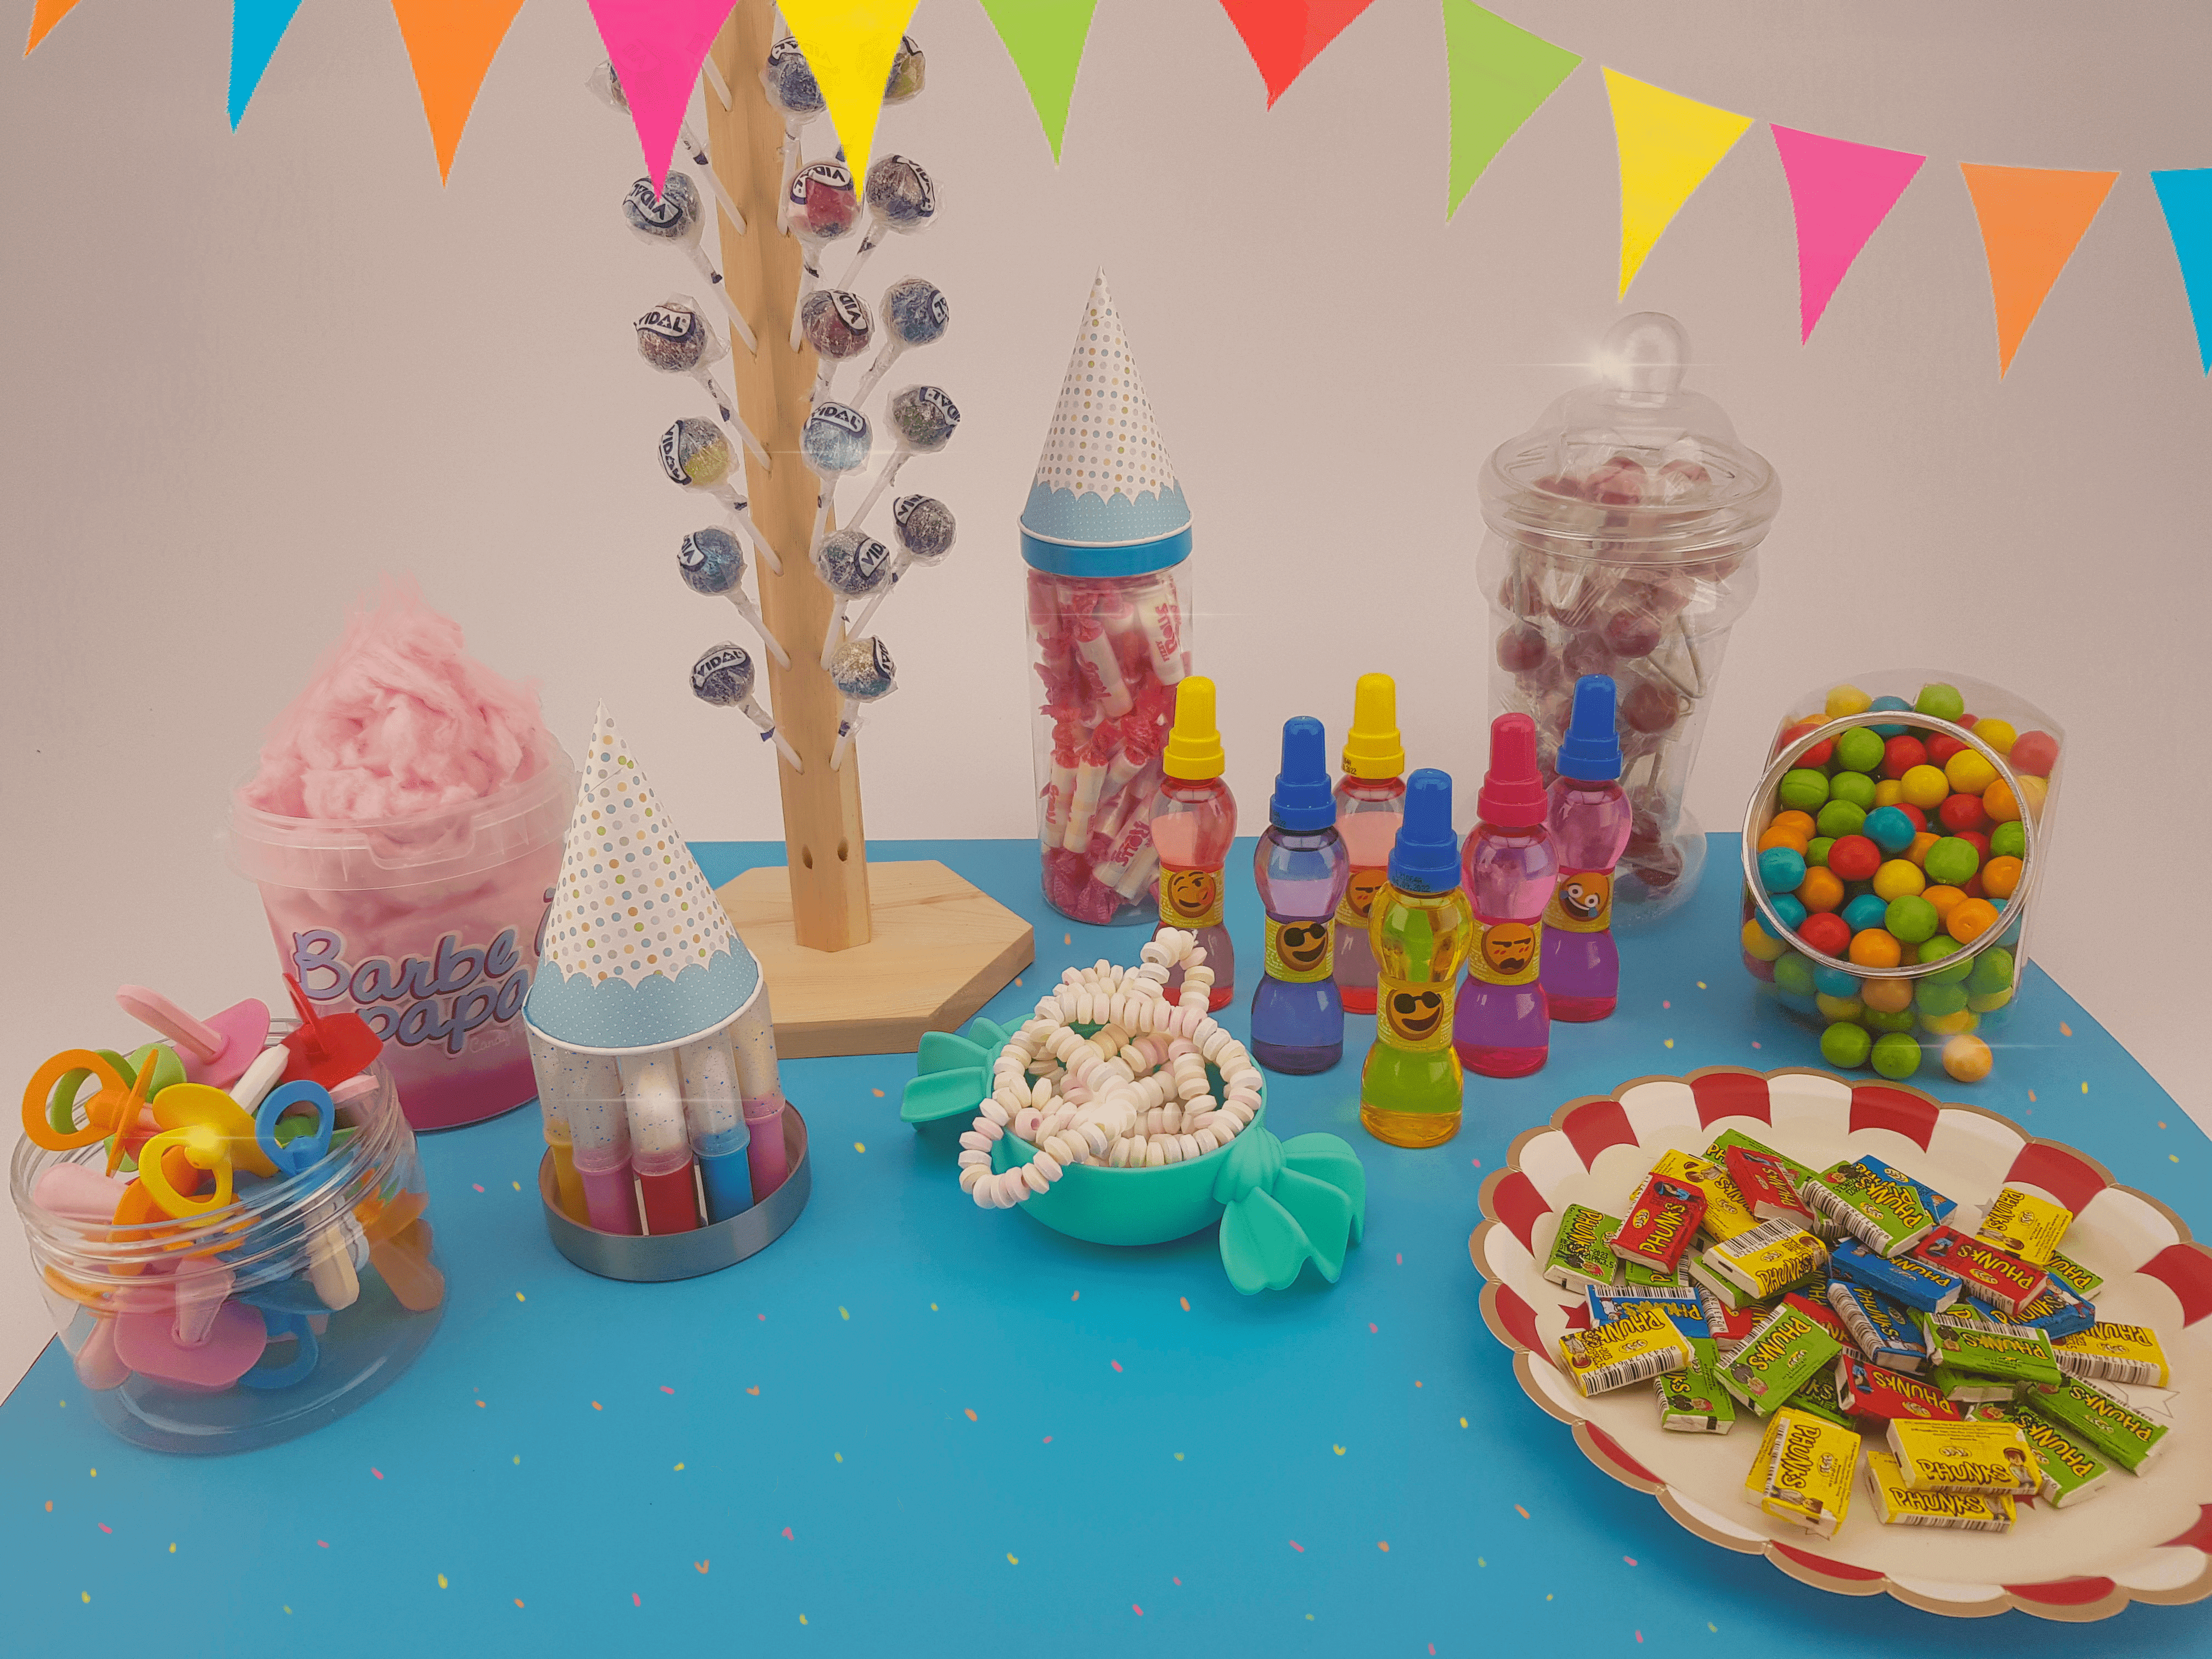 1 seau bonbons mélange fruité : idée pour decoration candy bar